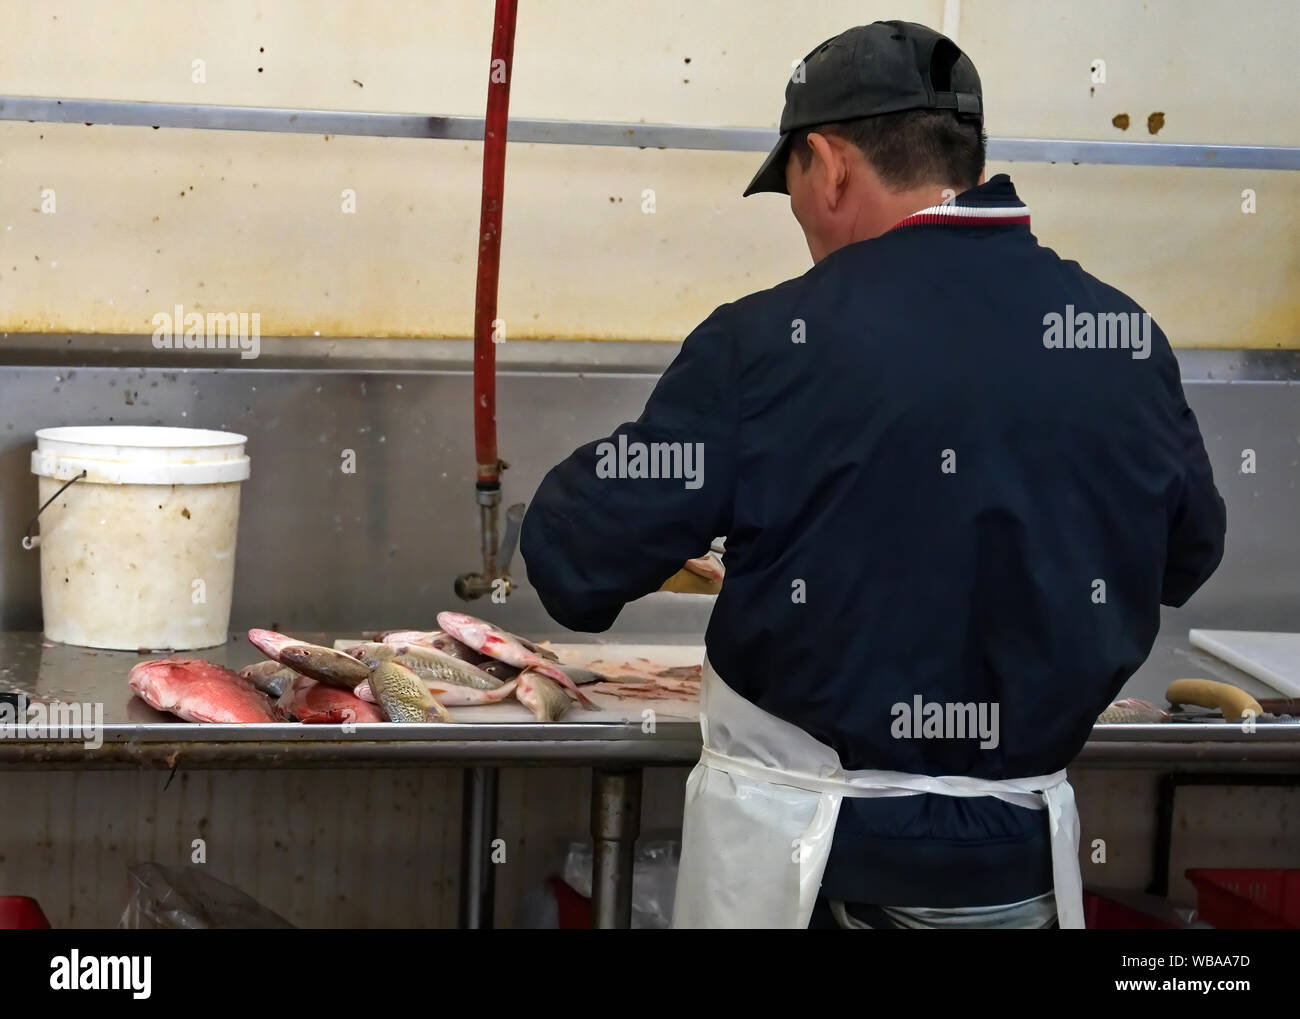 Mercado de Mariscos trabajador evisceración y limpiando pescado antes del pesaje y el traspaso a un cliente en espera. Foto de stock